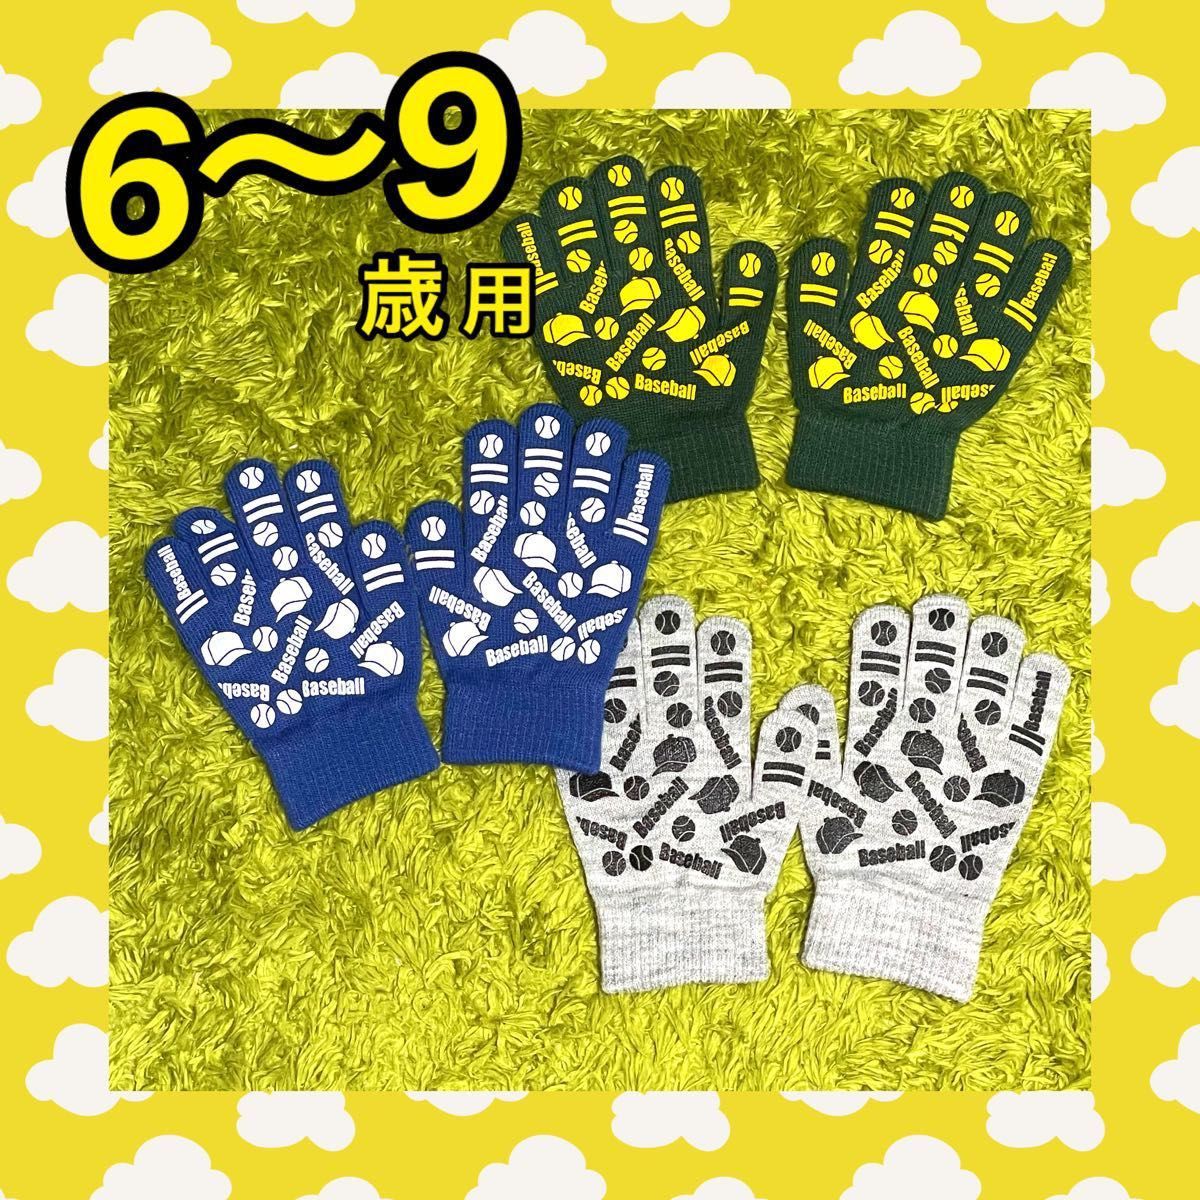 ニット手袋 子ども用 男の子 サッカー 滑り止め付き 五本指 スポーツ 3枚組 6歳〜9歳用